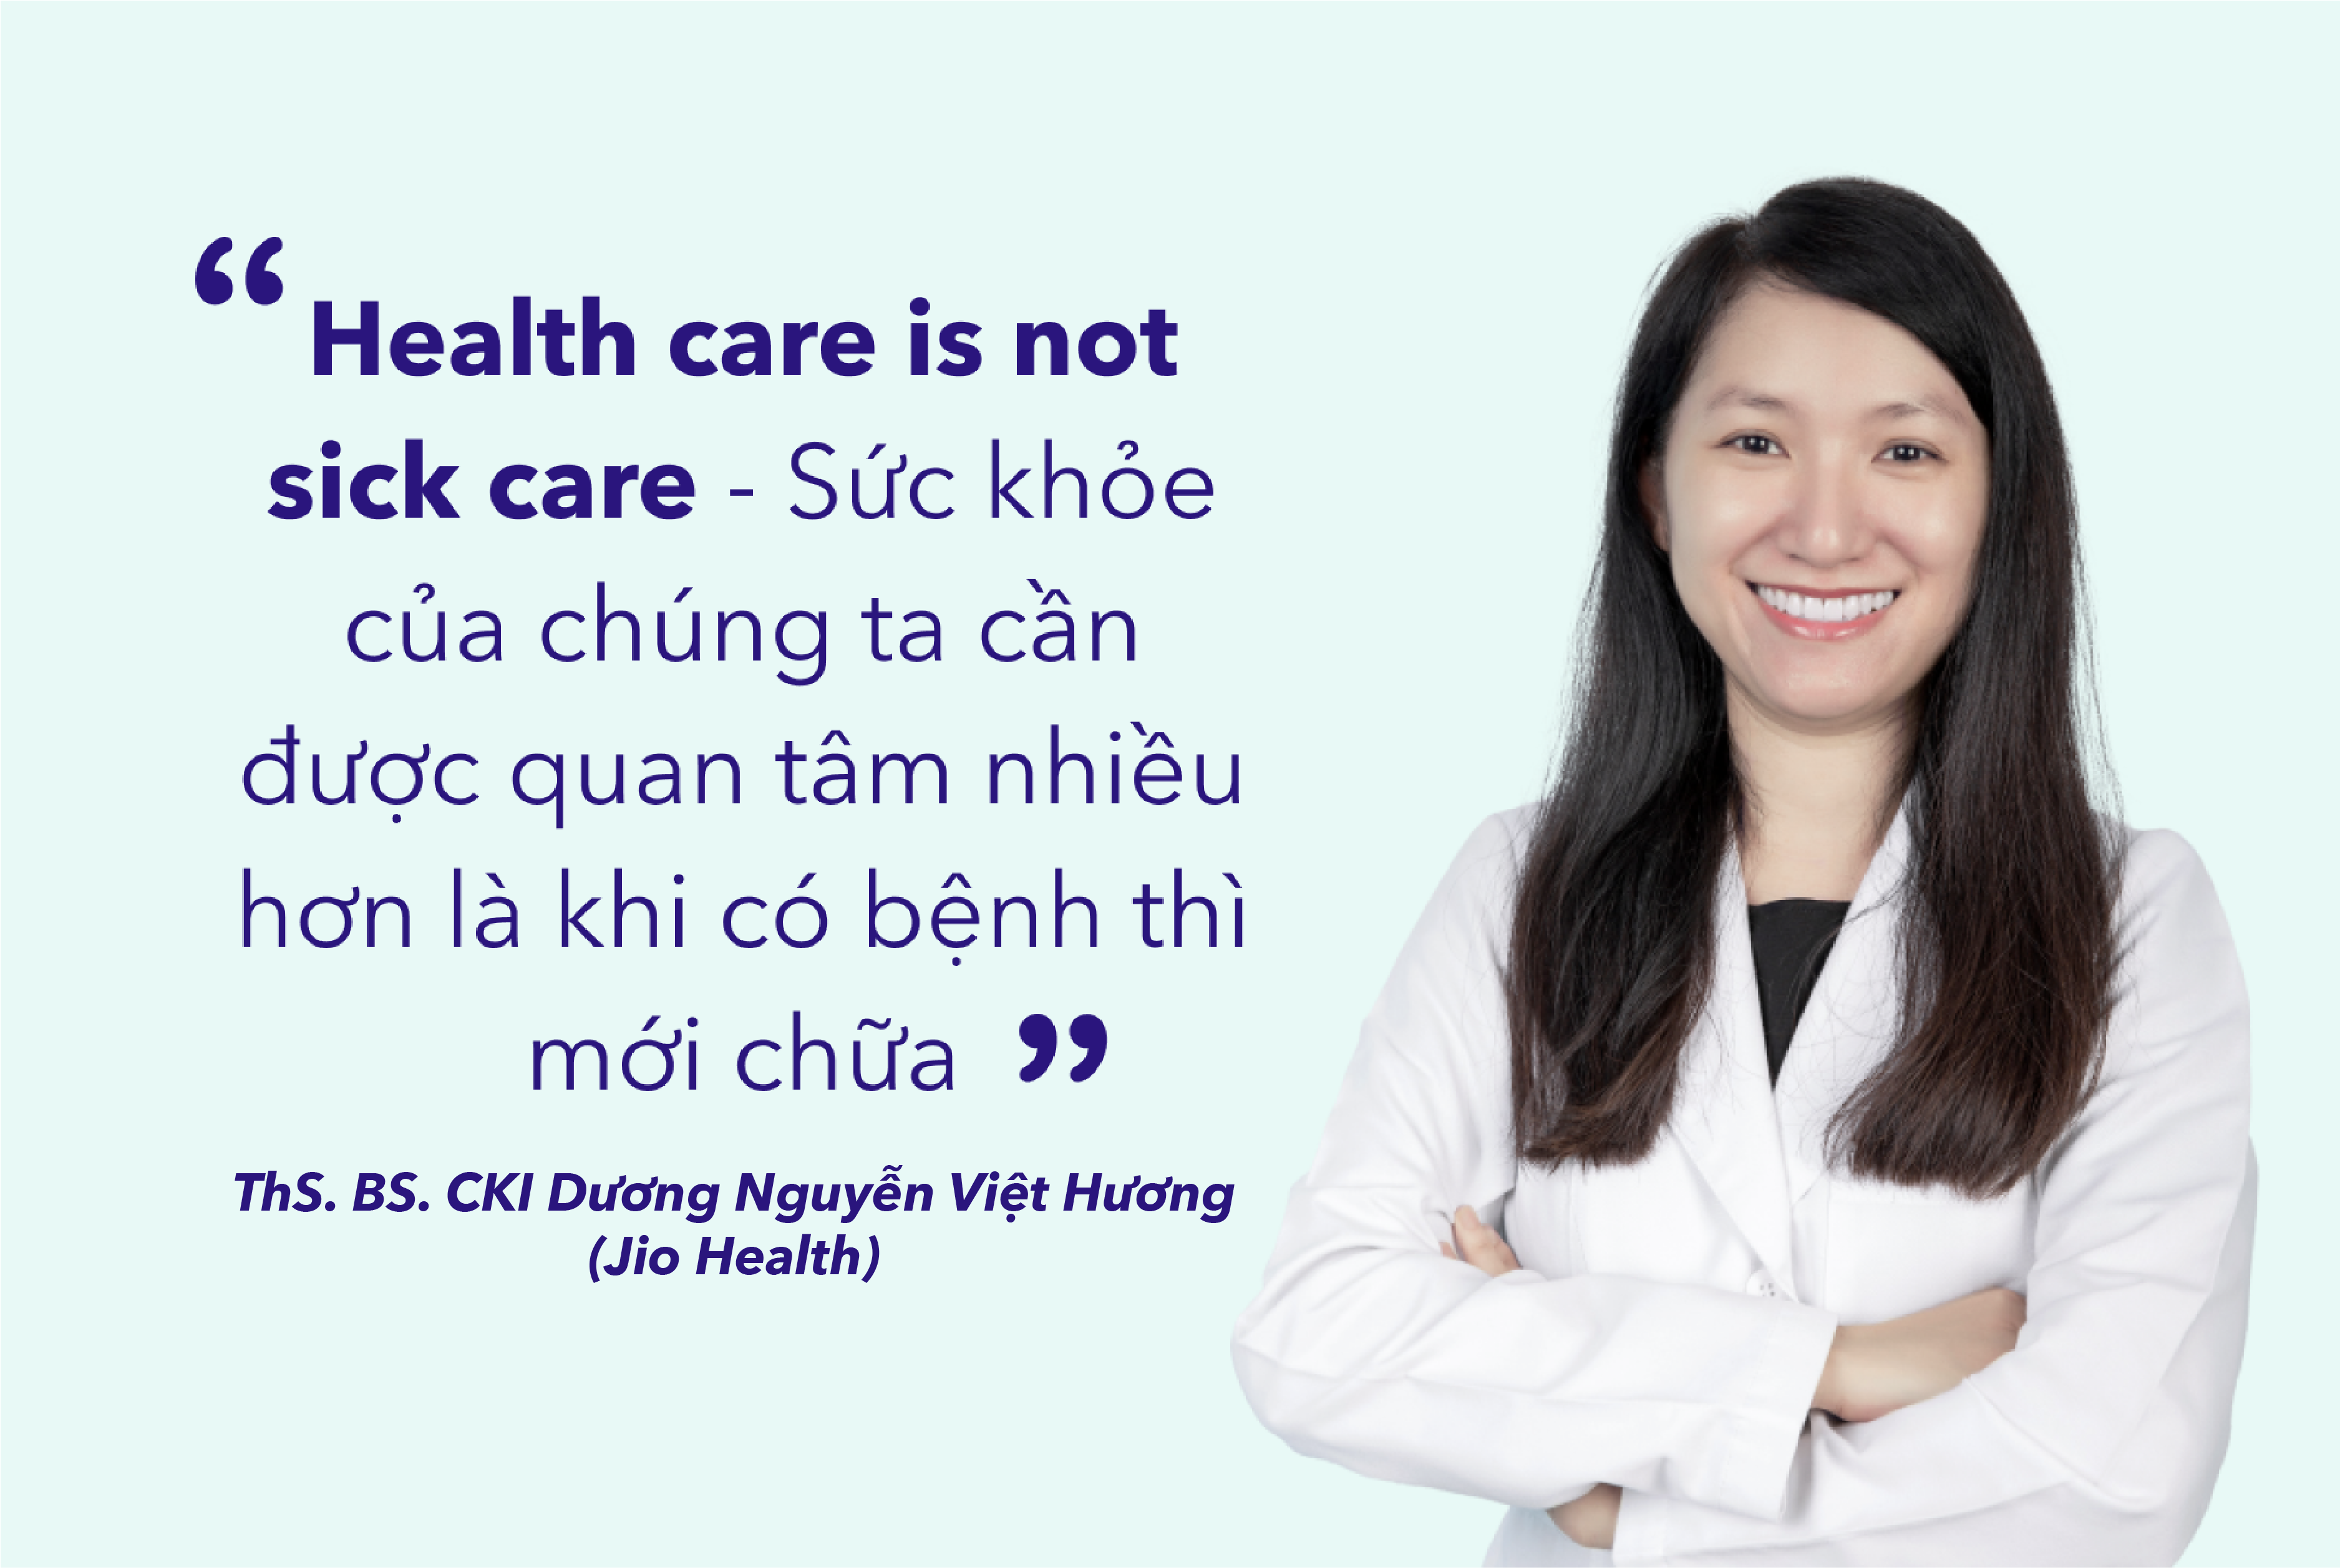 Stay Healthy cùng Thái Vân Linh – dự án vì sức khỏe bền vững chính thức khởi động